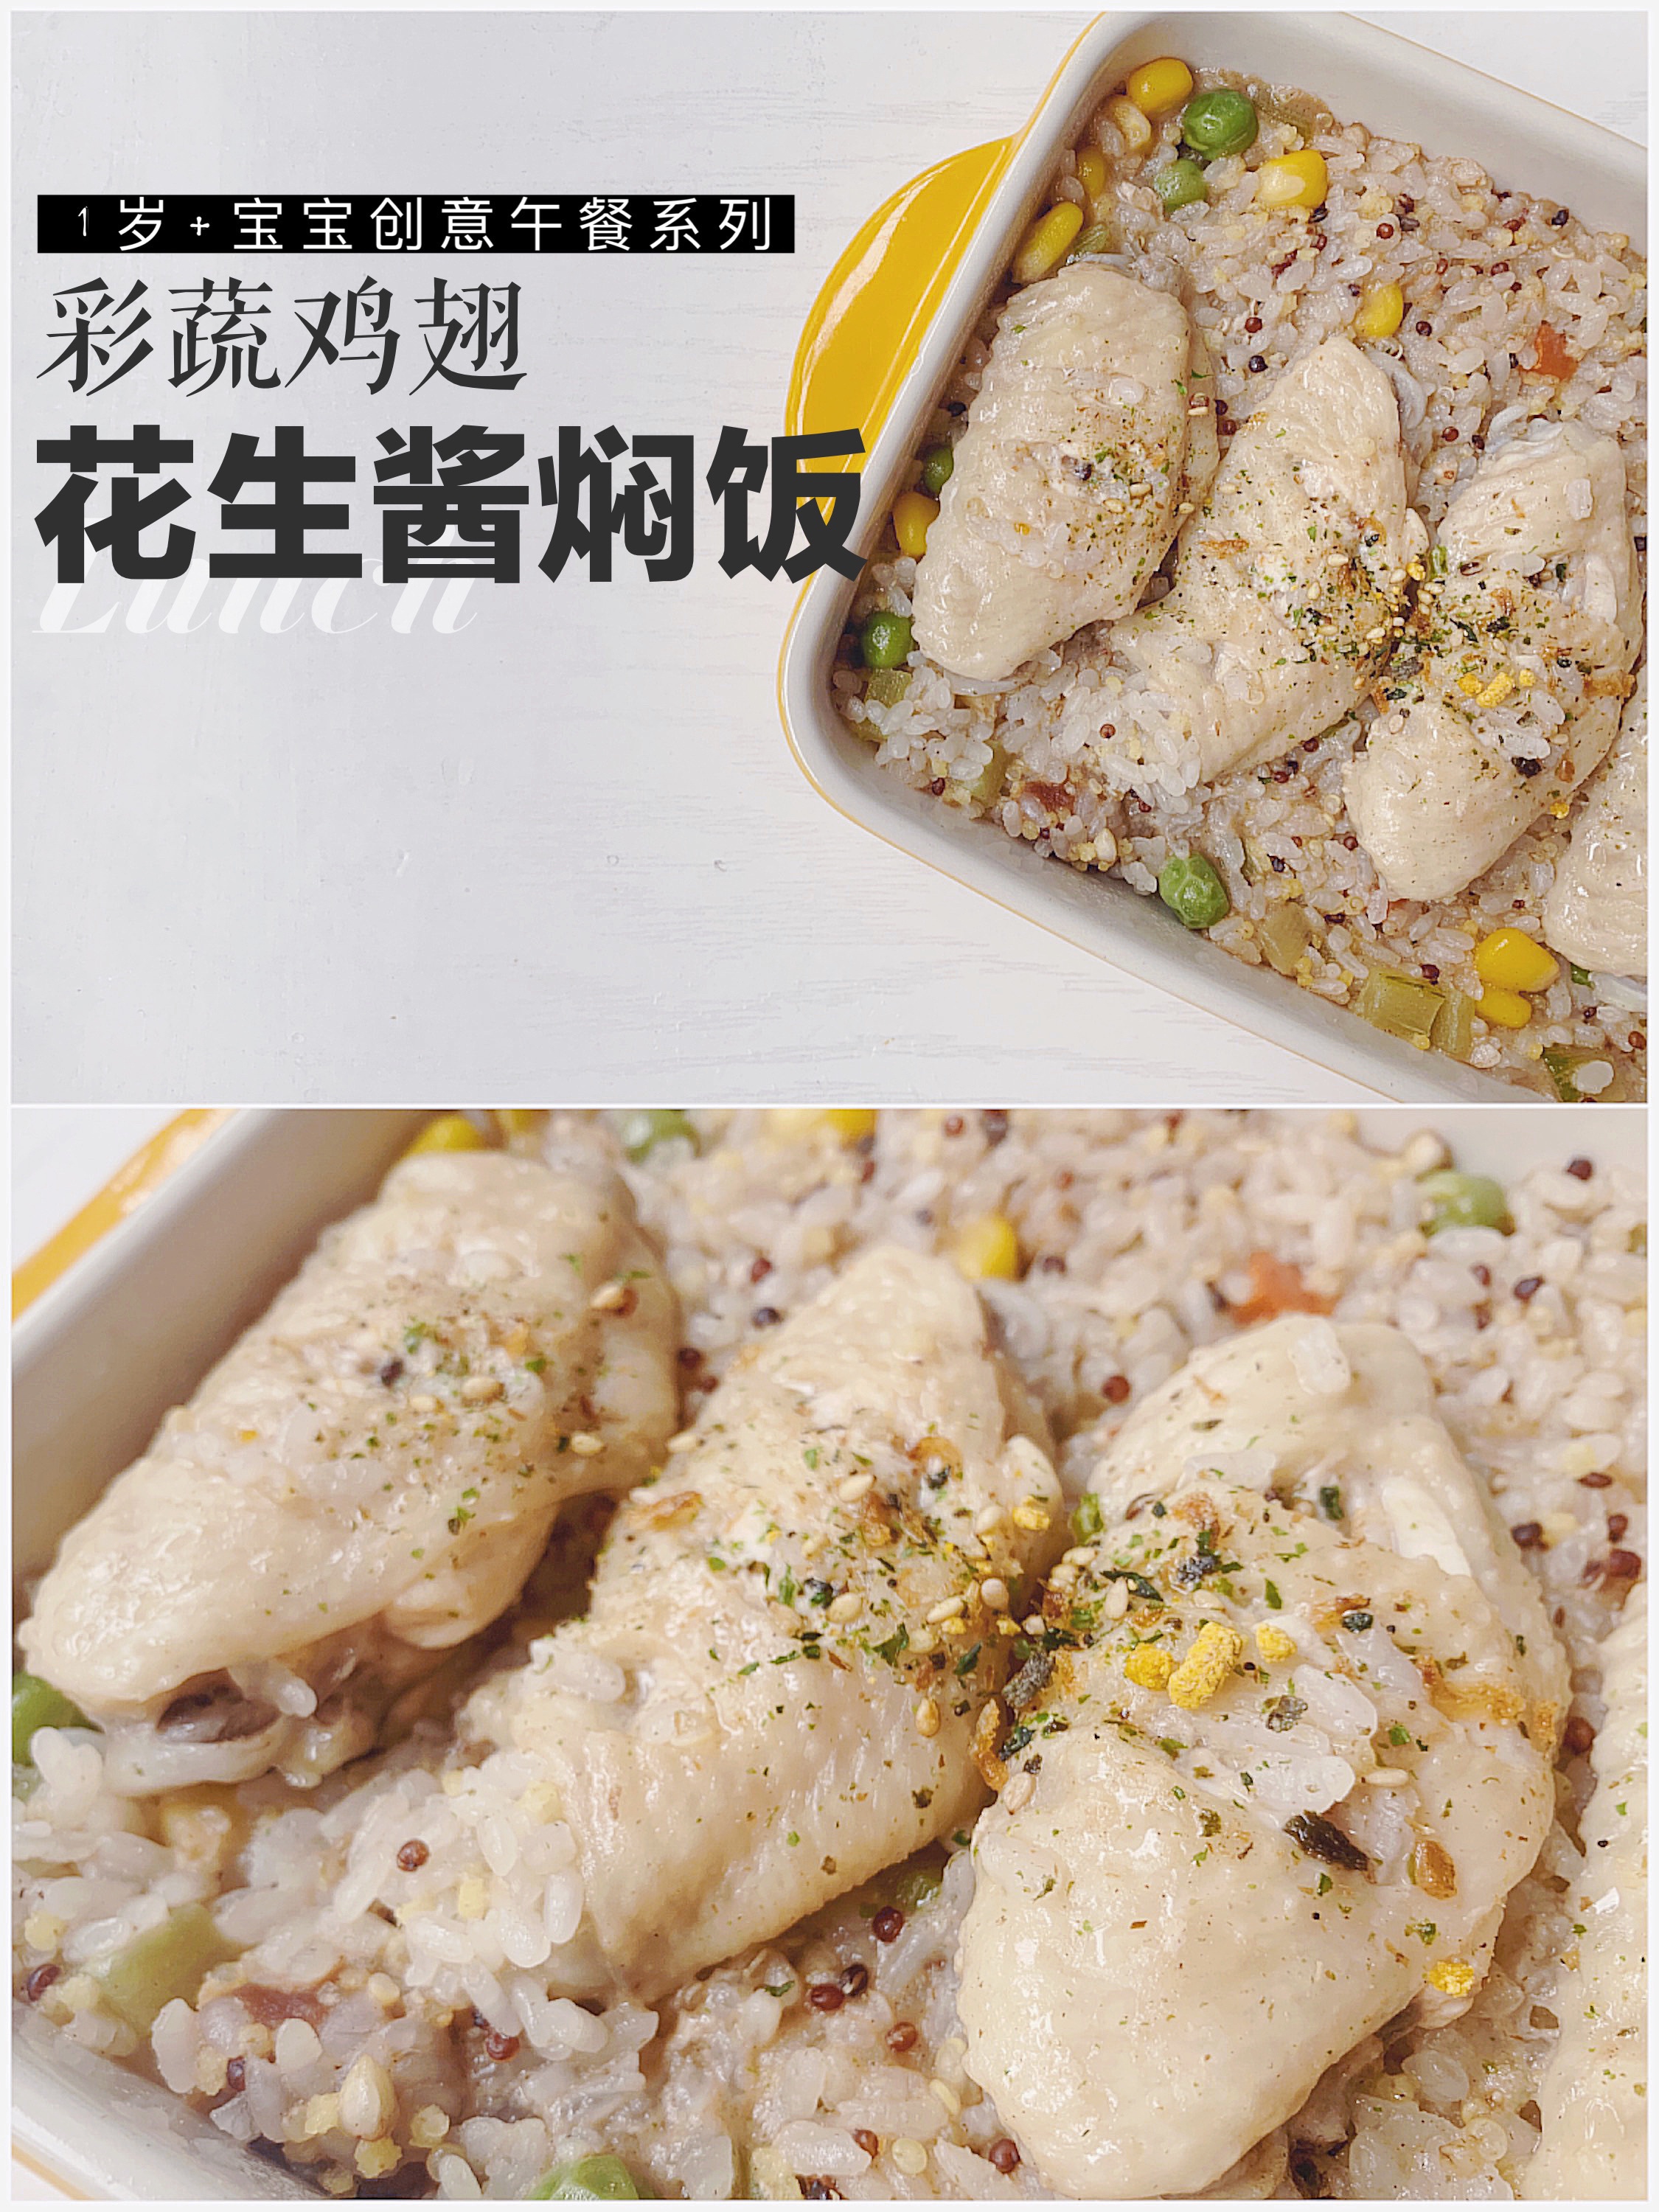 彩蔬鸡翅花生酱焖饭（10m+辅食）的做法